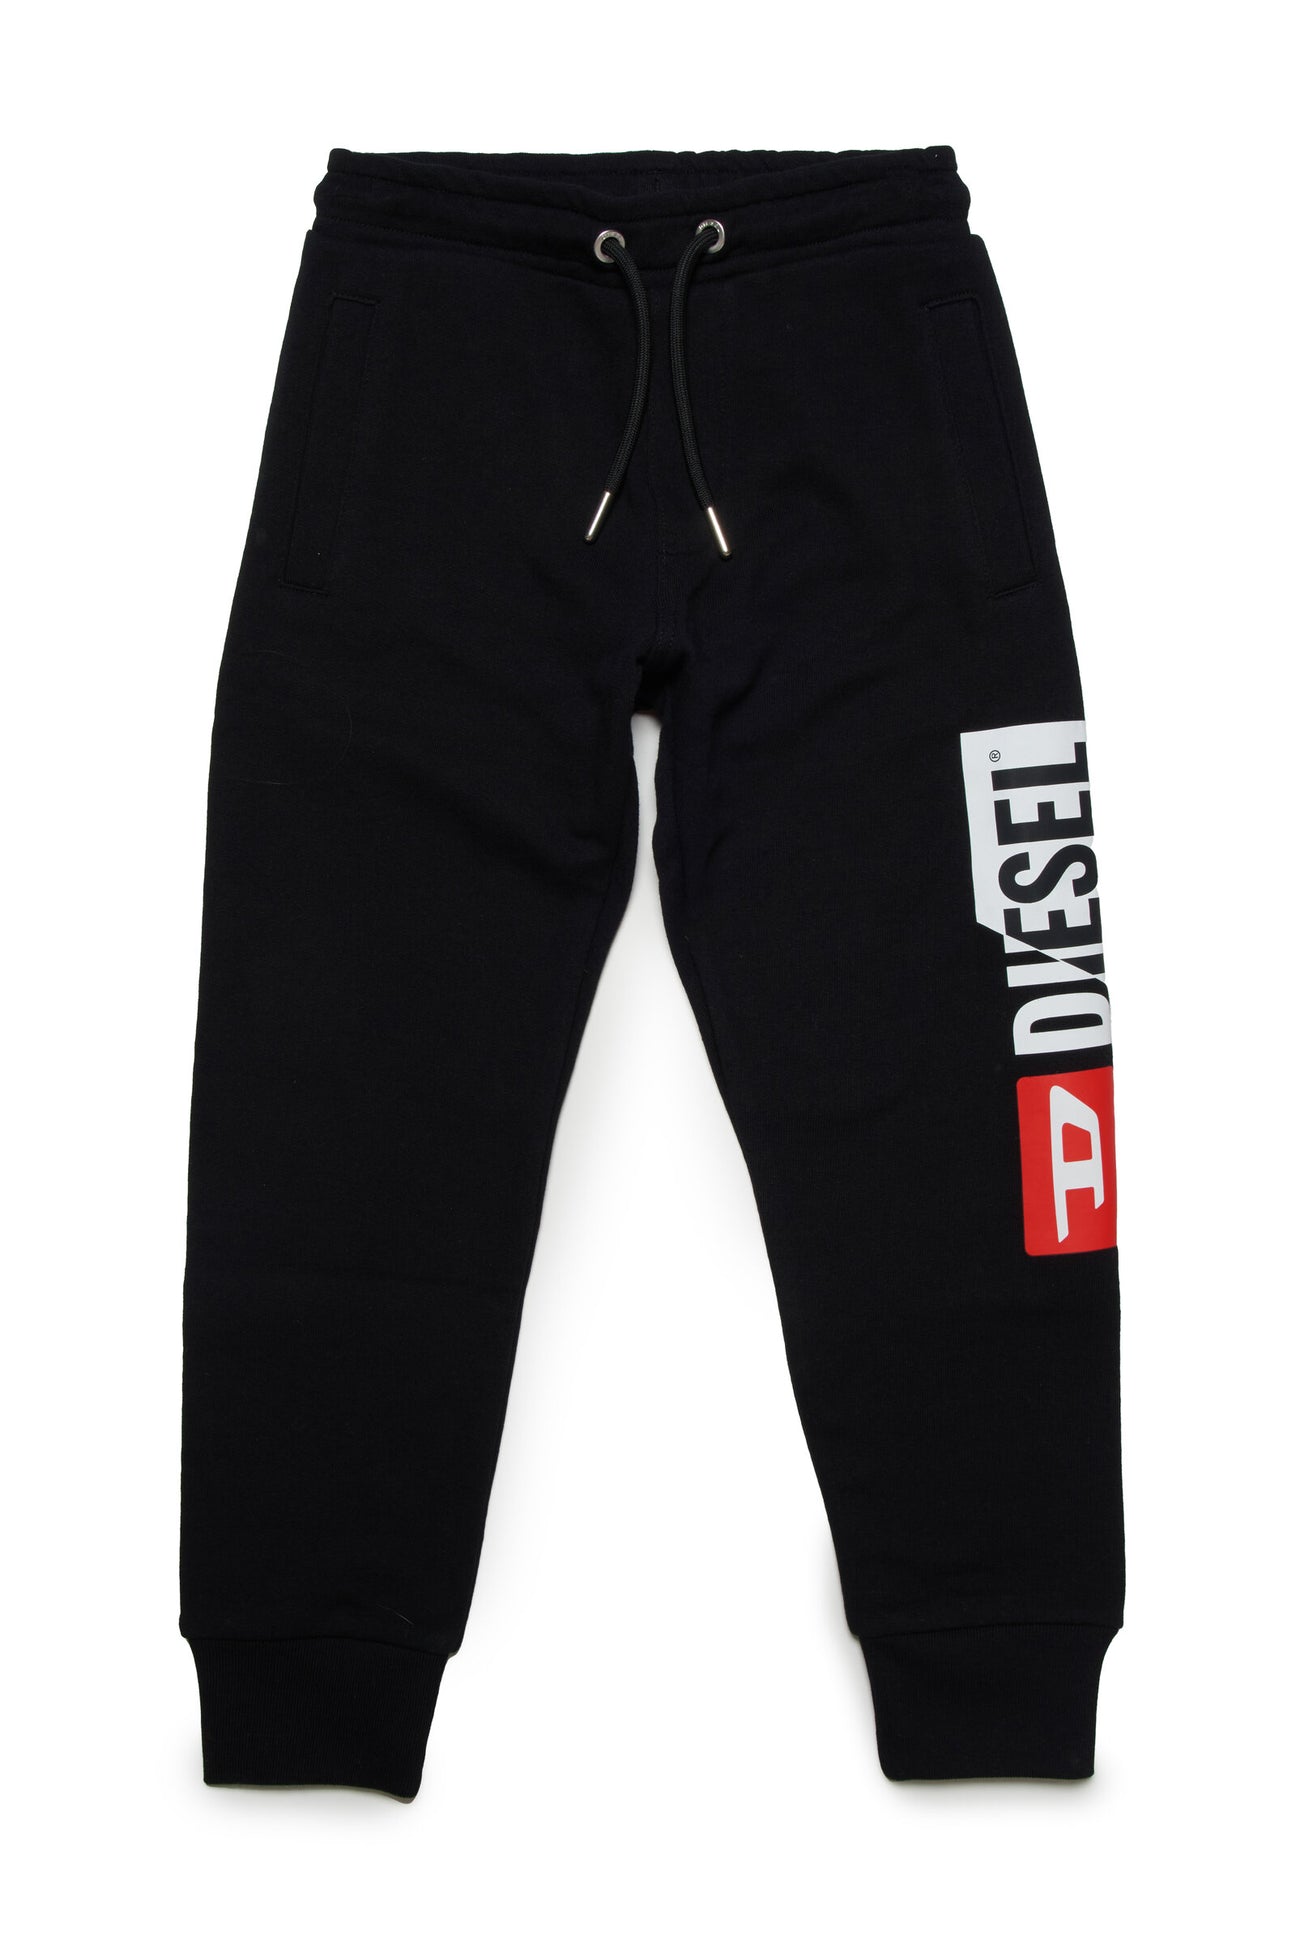 Pantalón jogger negro con logo Diesel double 